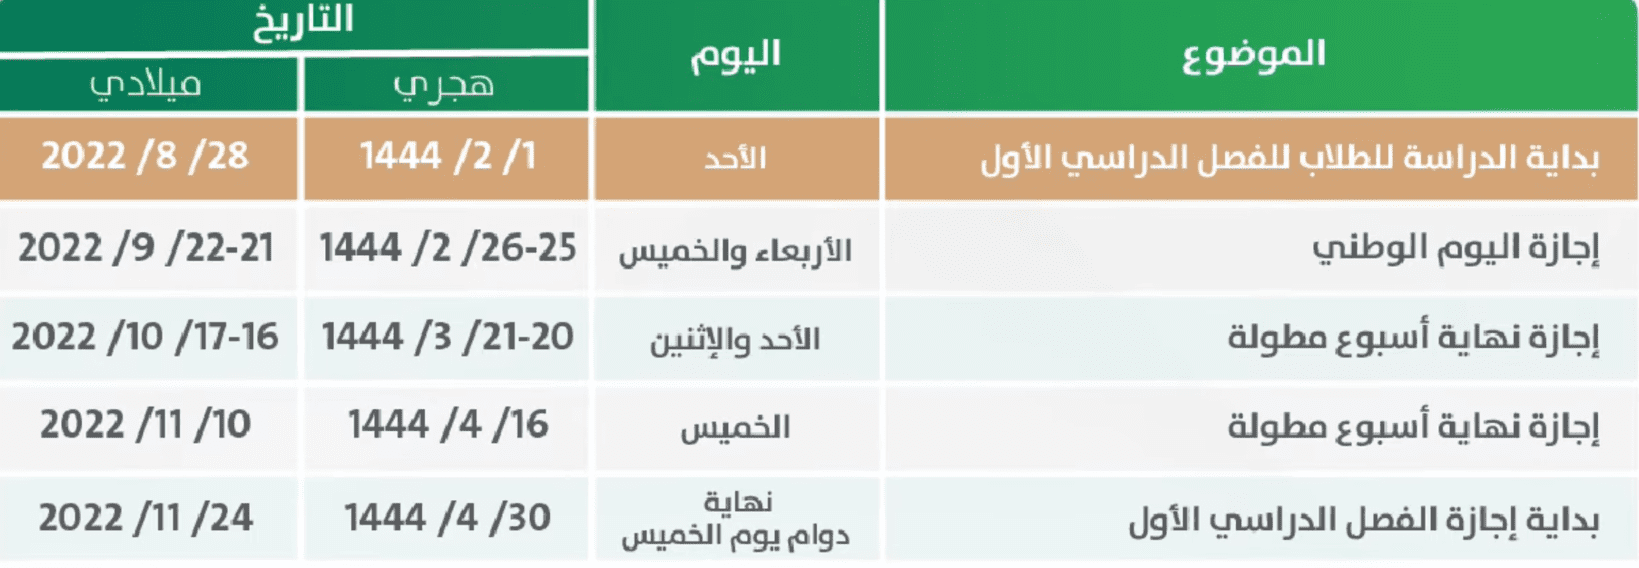 جدول الإجازات المطولة للفصل الدراسي الأول